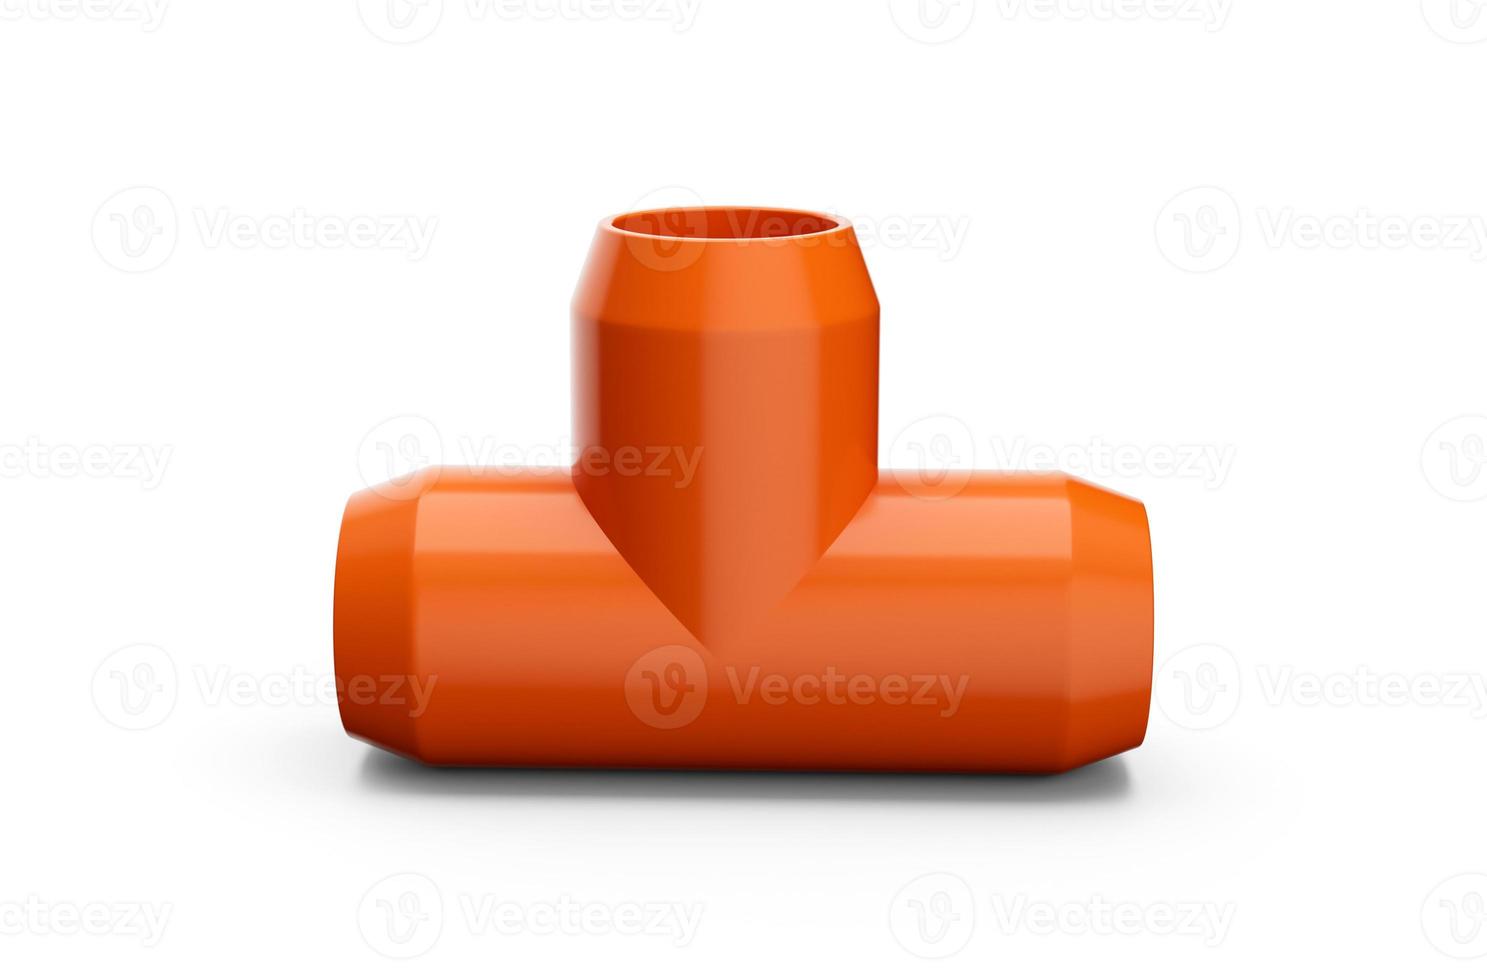 accesorio de tubería naranja de pvc, ilustración 3d de junta de tubería de tres vías de pvc foto